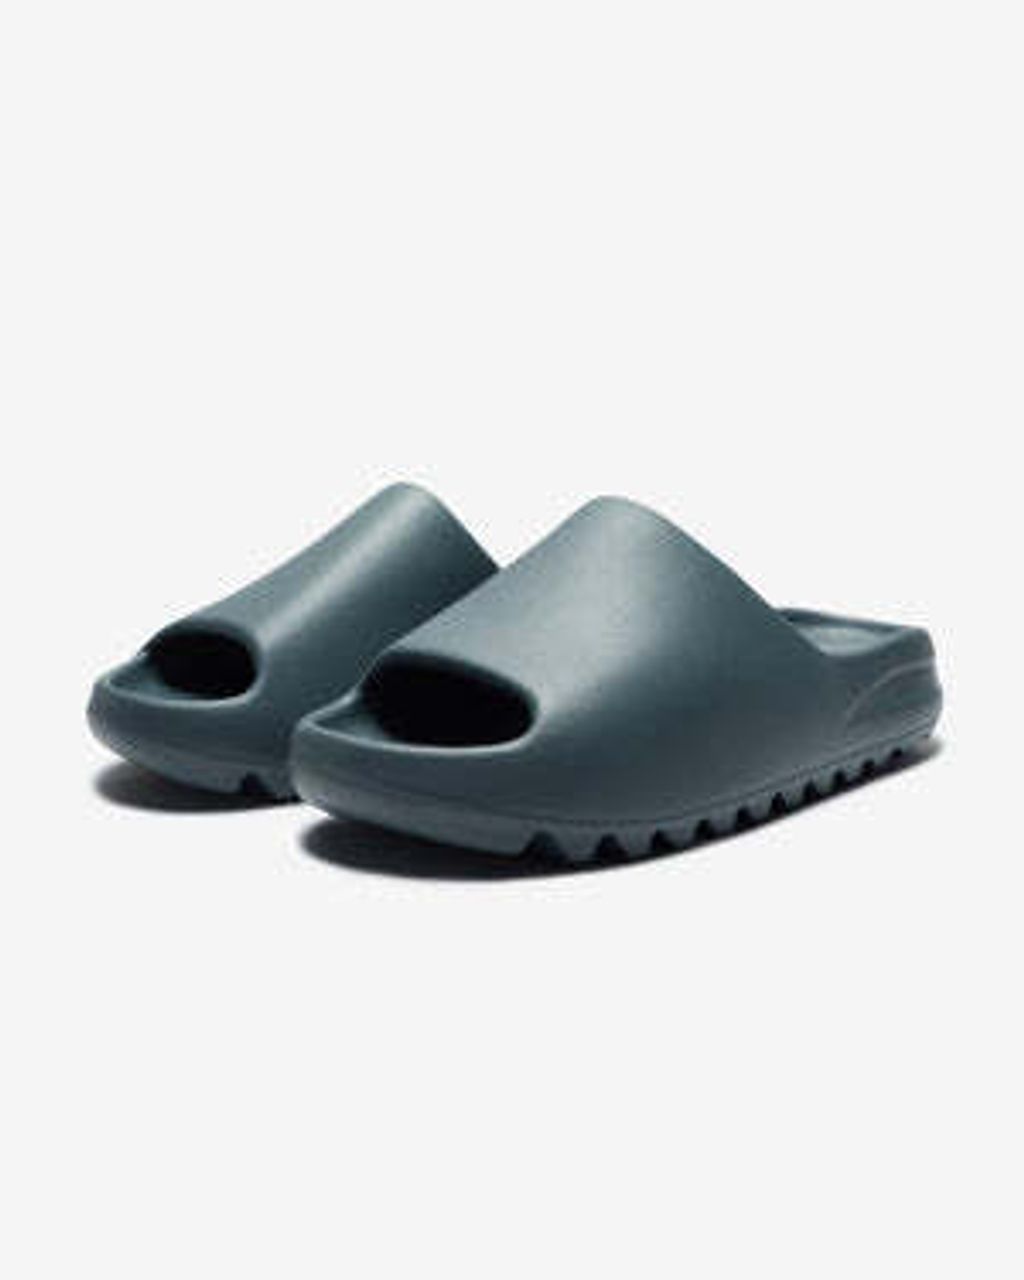 footwear_adidas_yzy-slide_ID2349.view_1_300x